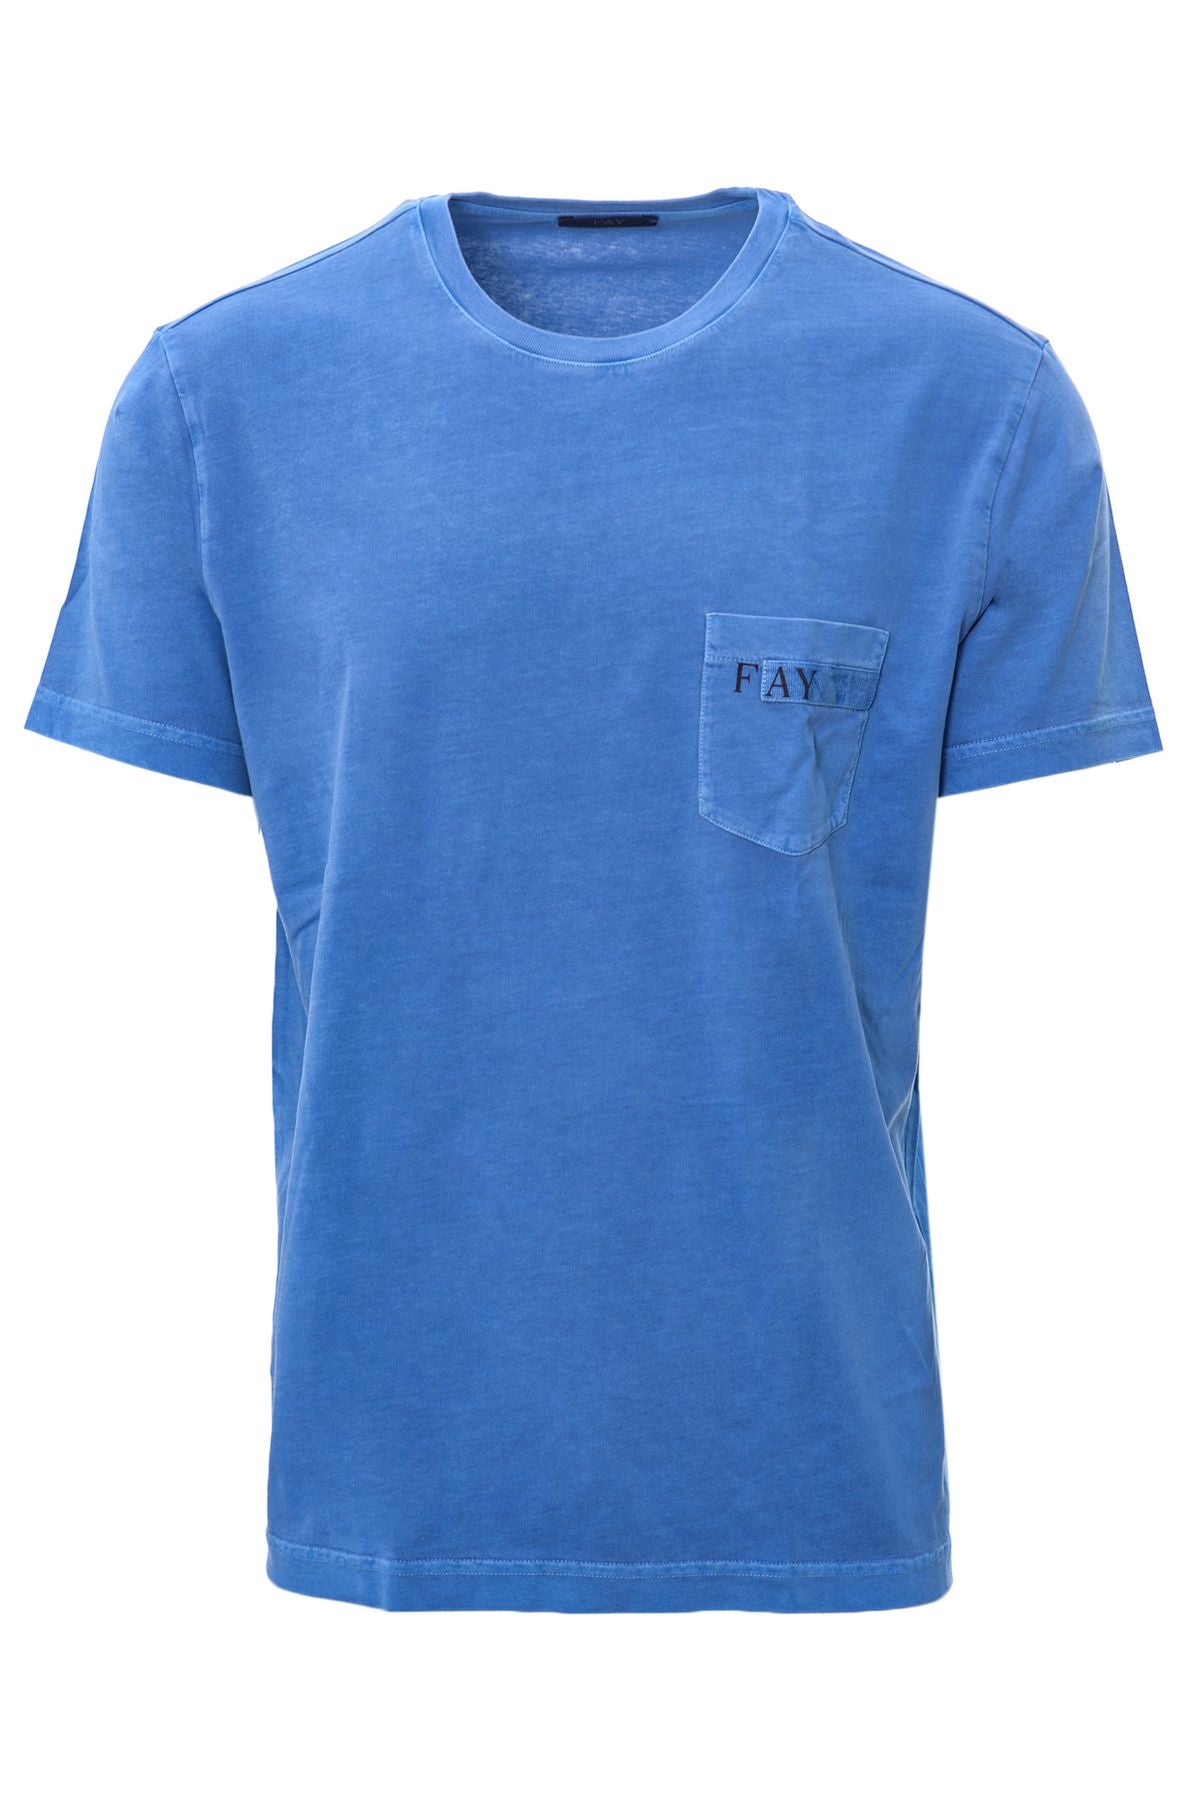 FAY T-shirt Primavera/Estate Cotone